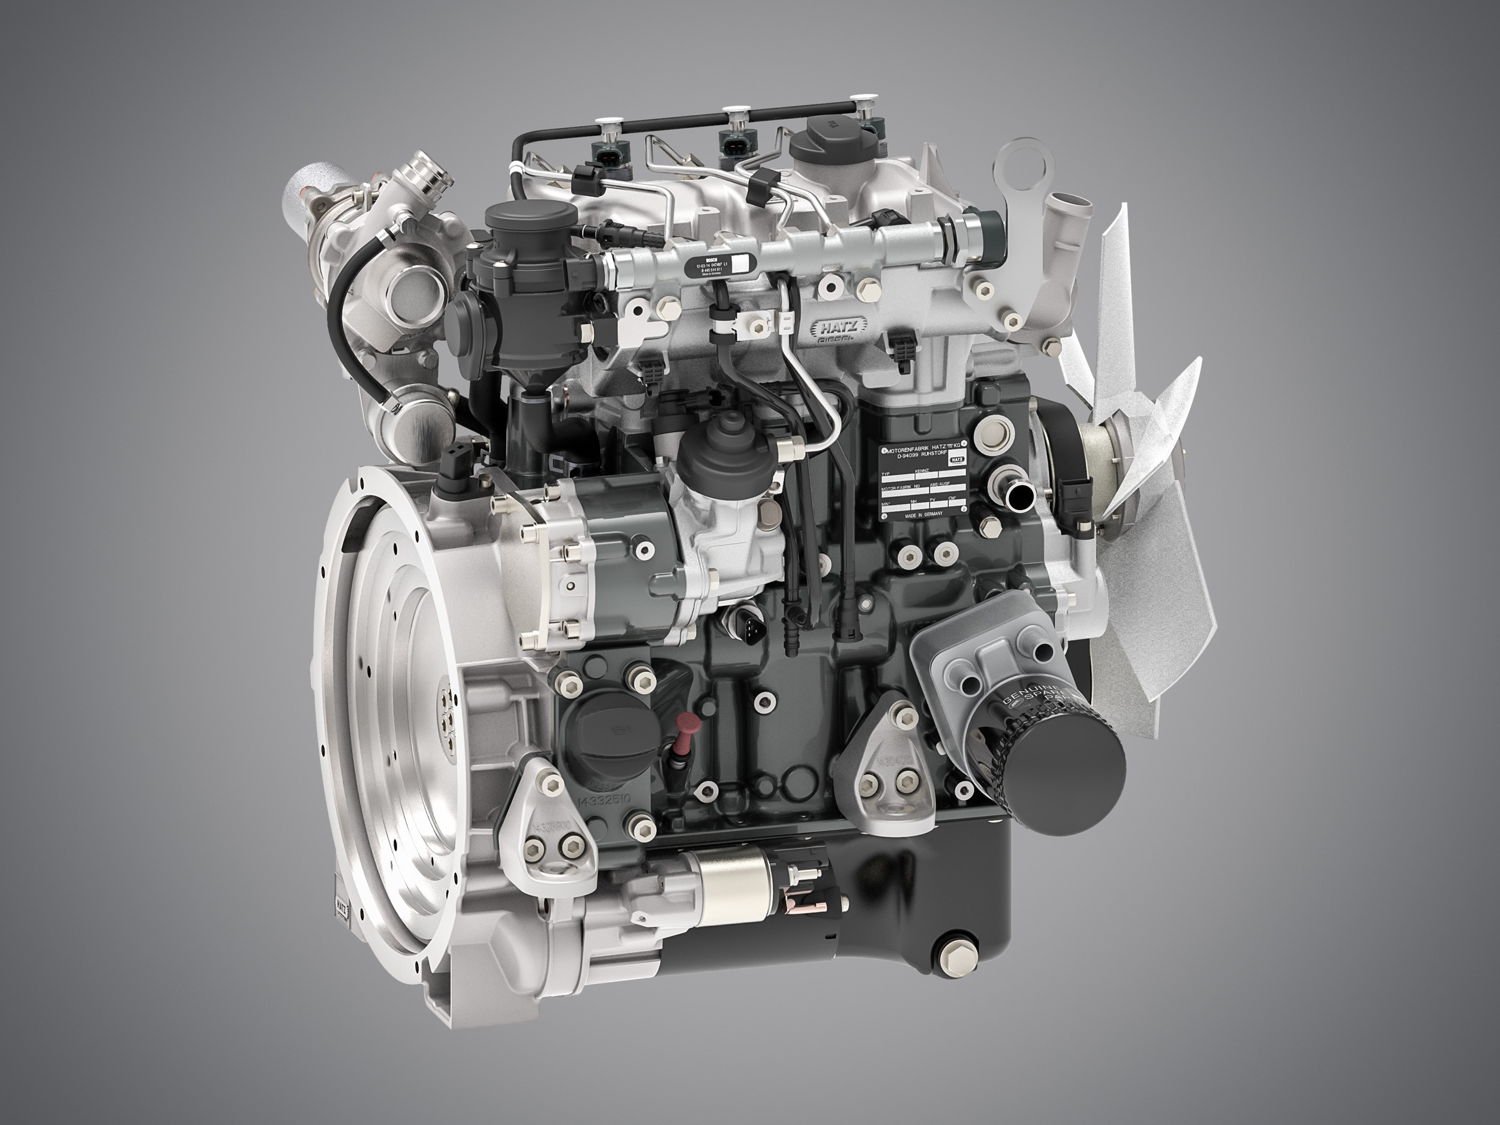 Nouveau moteur compact à trois cylindres de la série H de Hatz 3H50T, en version de 18,4 kW conforme à la norme EU Stage V sans filtre à particules diesel